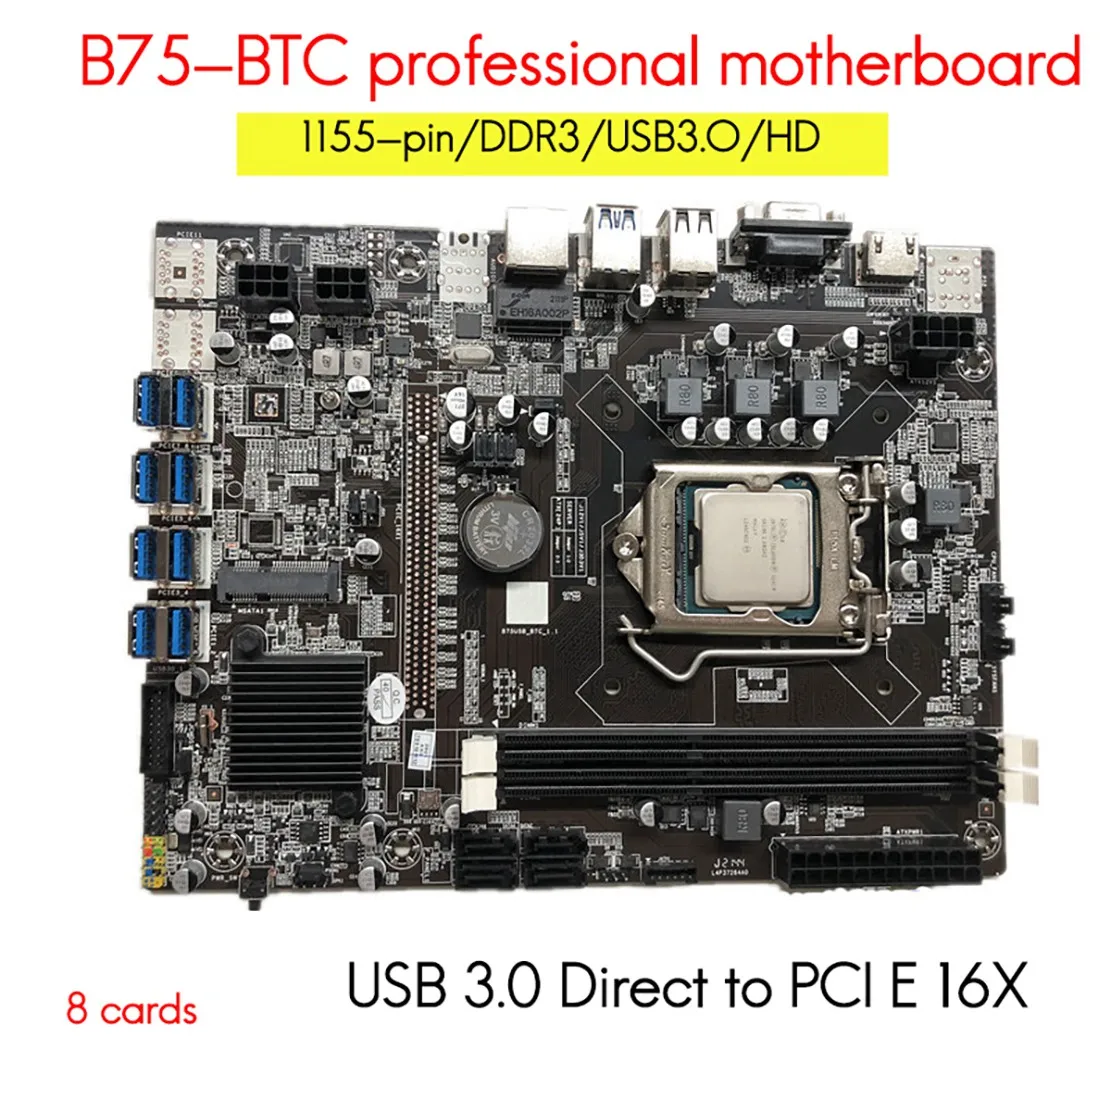 

Набор материнской платы для майнинга B75 BTC с случайным ЦП + вентилятор + 8 Гб DDR3 ОЗУ + термопаста + кабель переключателя 8 USB 3,0 слот LGA1155 SATA3.0